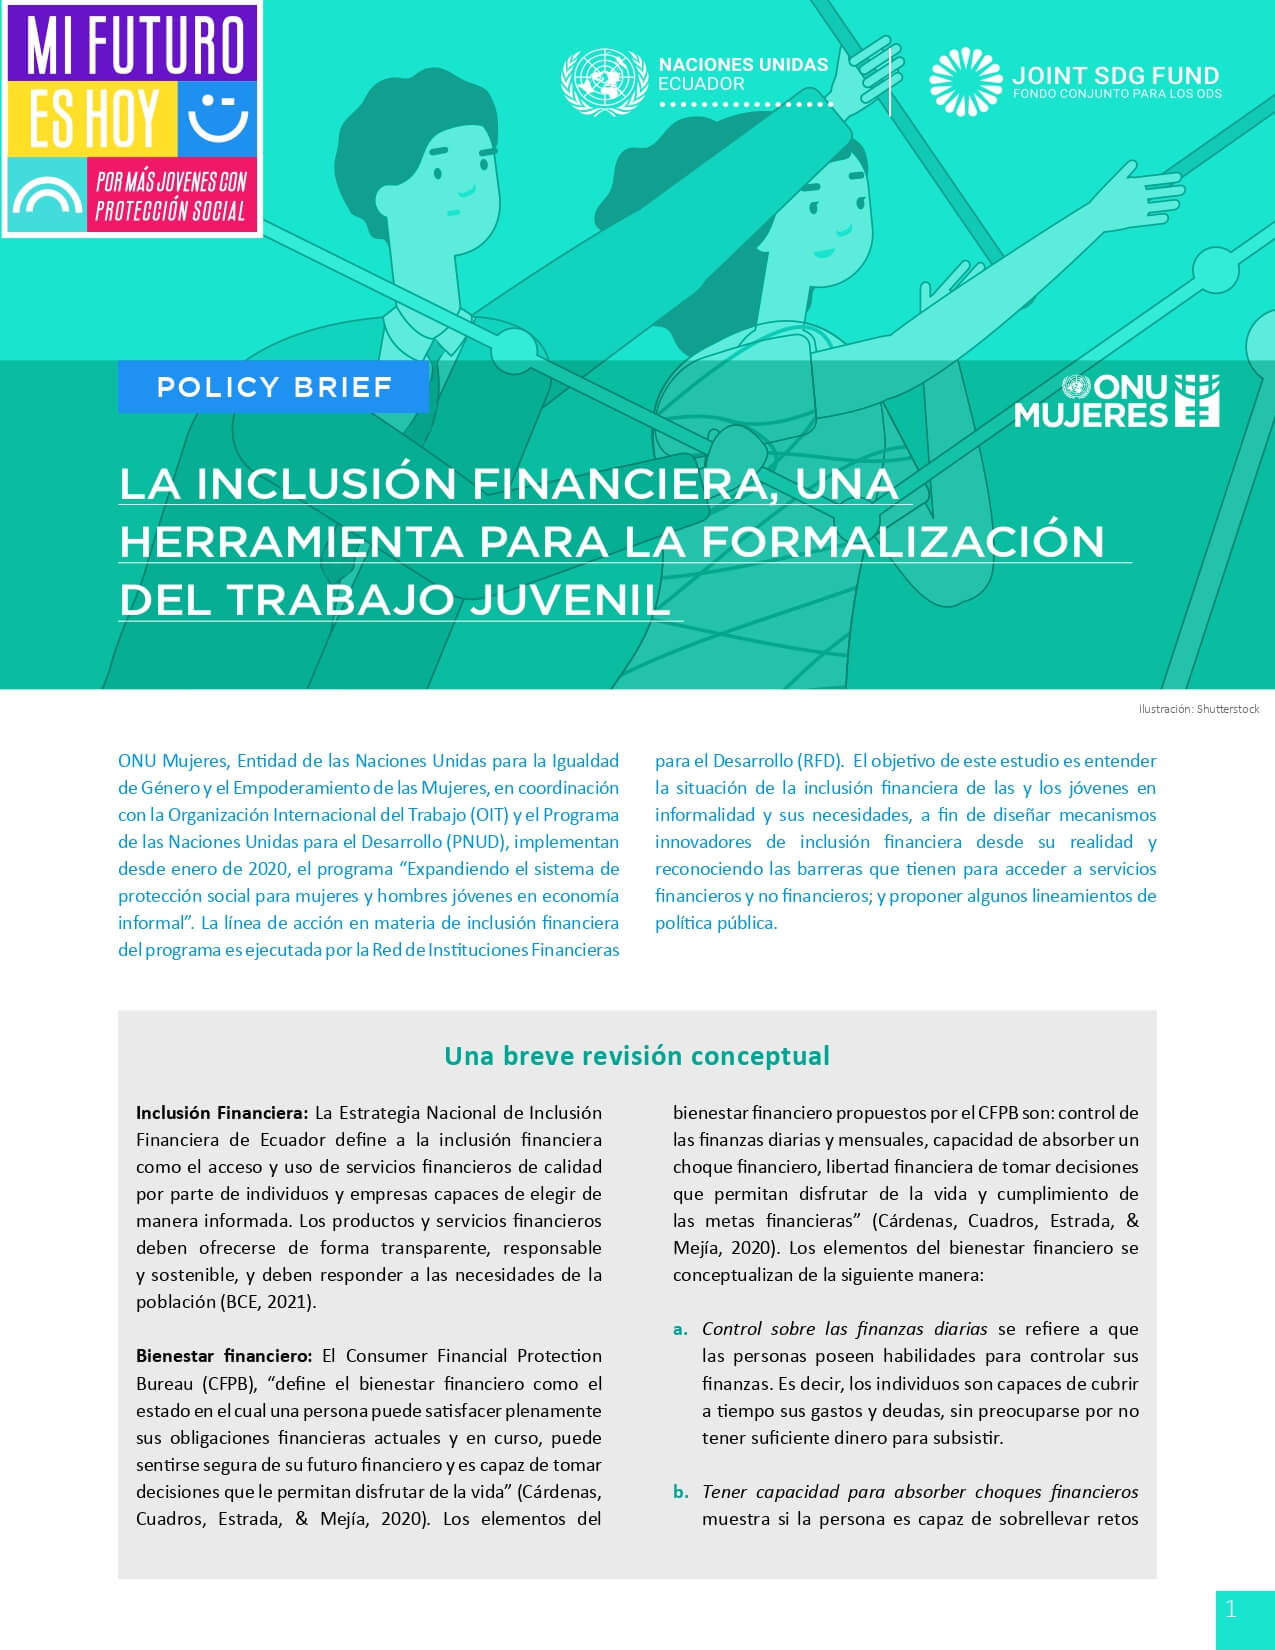 Policy brief La inclusión financiera, una herramienta para la formalización del trabajo juvenil